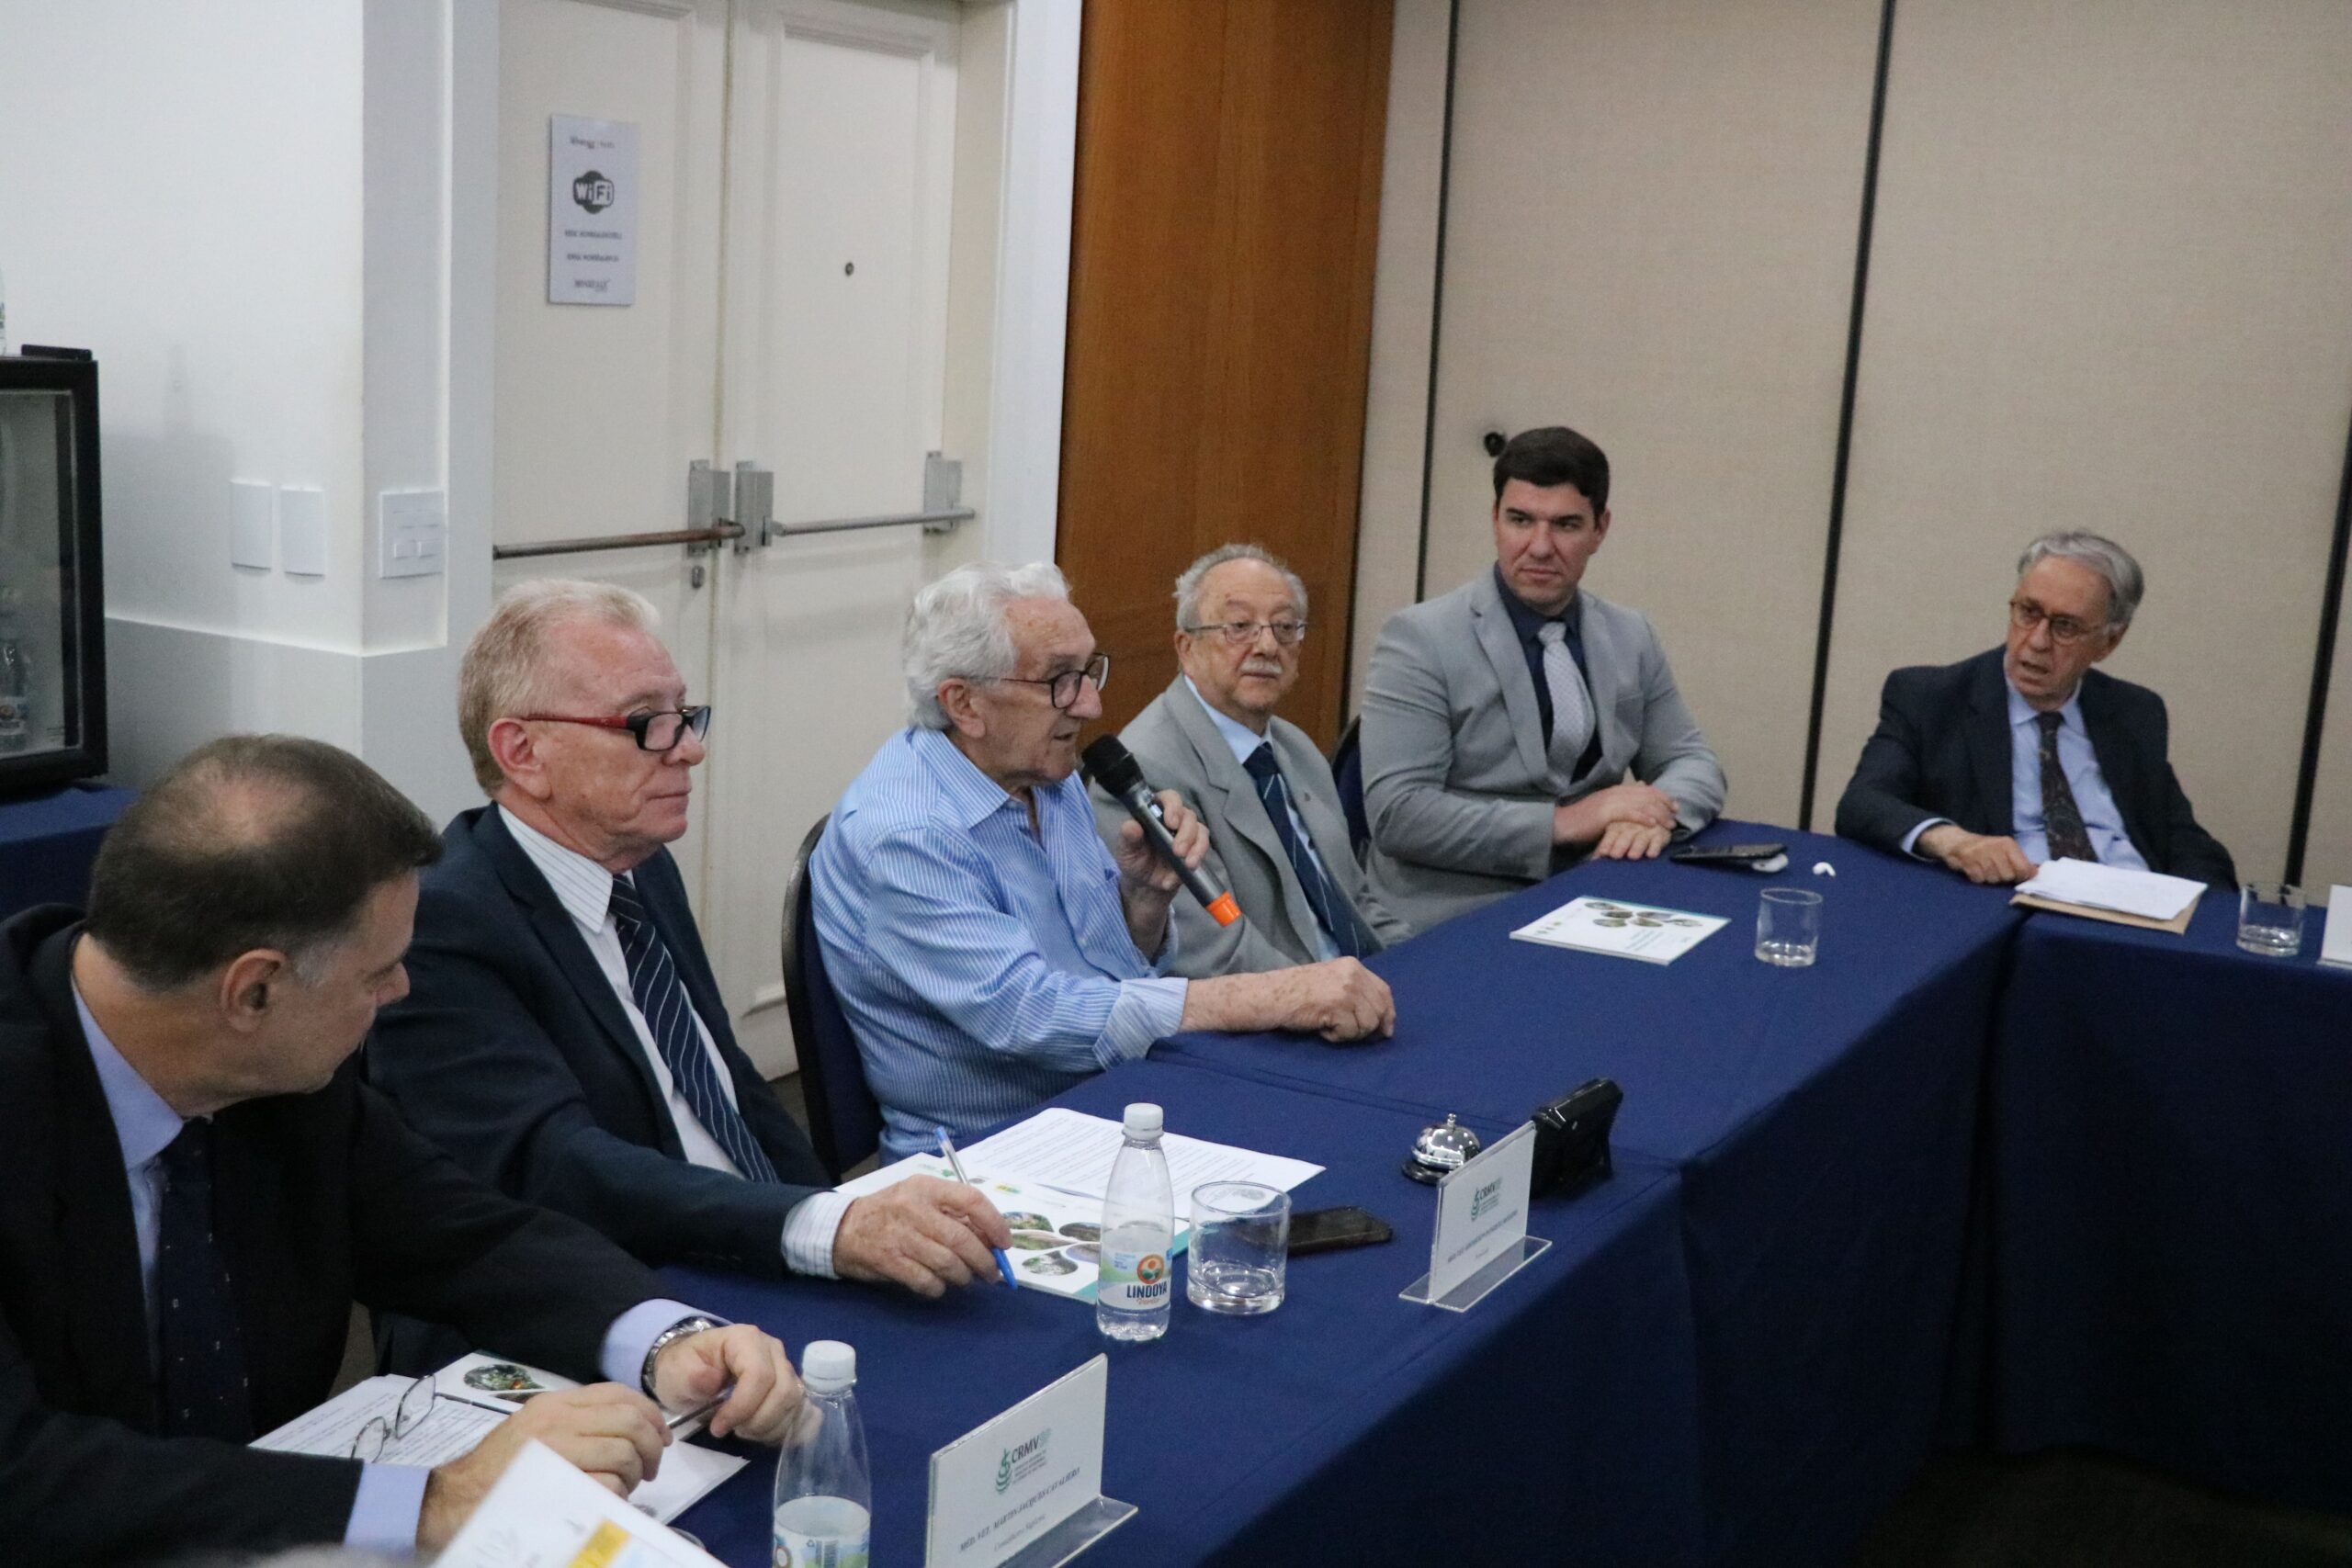 Na imagem aparecem seis homens sentados atrás de uma mesa com toalhas azuis. Eles estão atentos a fala do presidente do CFMV, que está ao microfone.